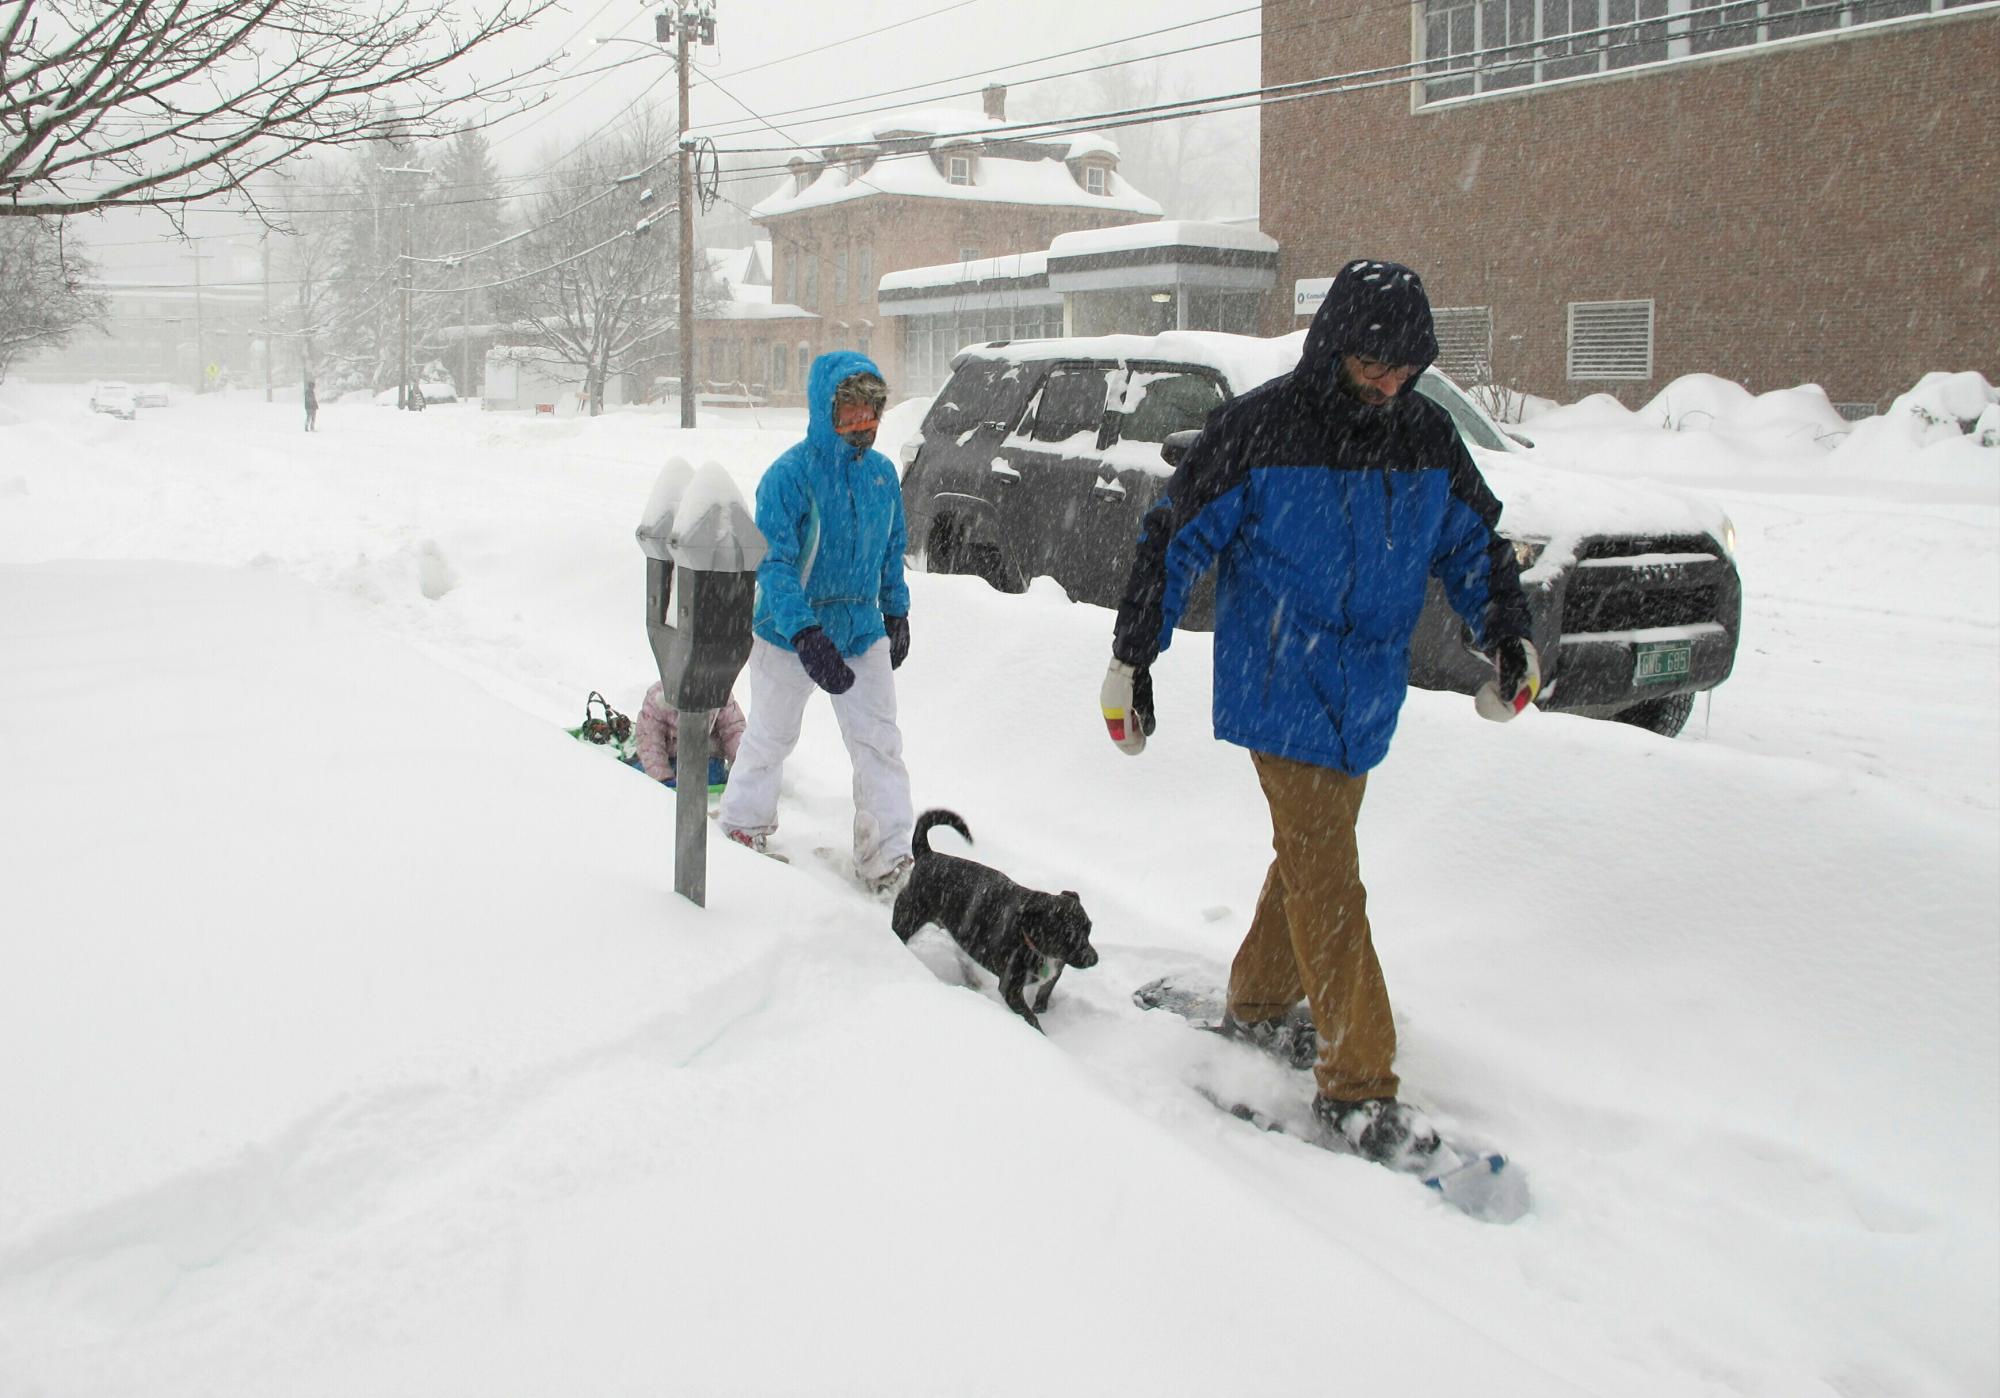 Will Roberts y su esposa Julia Chafets Snowshoe en el centro de Montpelier, VT., durante una tormenta de nieve el domingo, 20 de enero, 2019. Chafets está tirando de un trineo llevando a su hija.